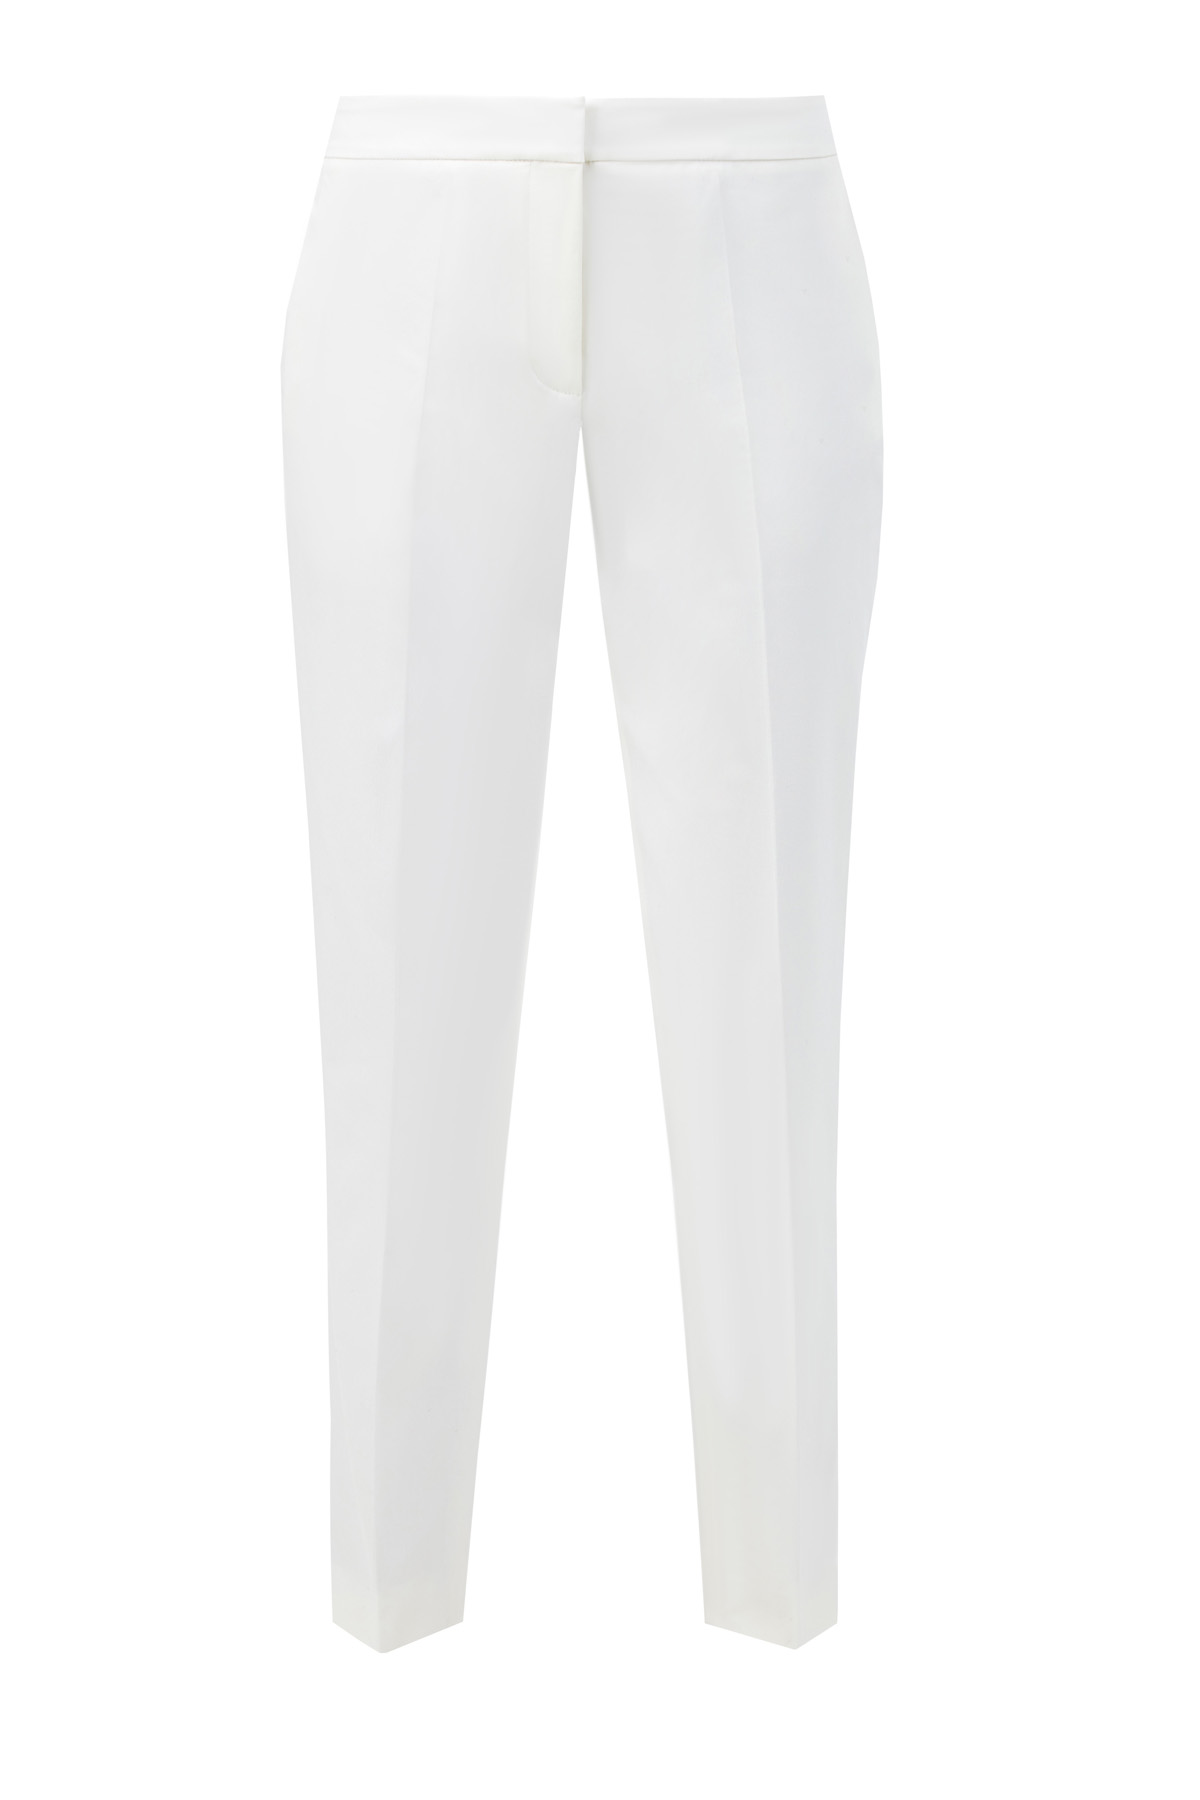 Зауженные белые брюки из гладкого хлопка AGNONA, цвет белый, размер 44;38;42 - фото 1